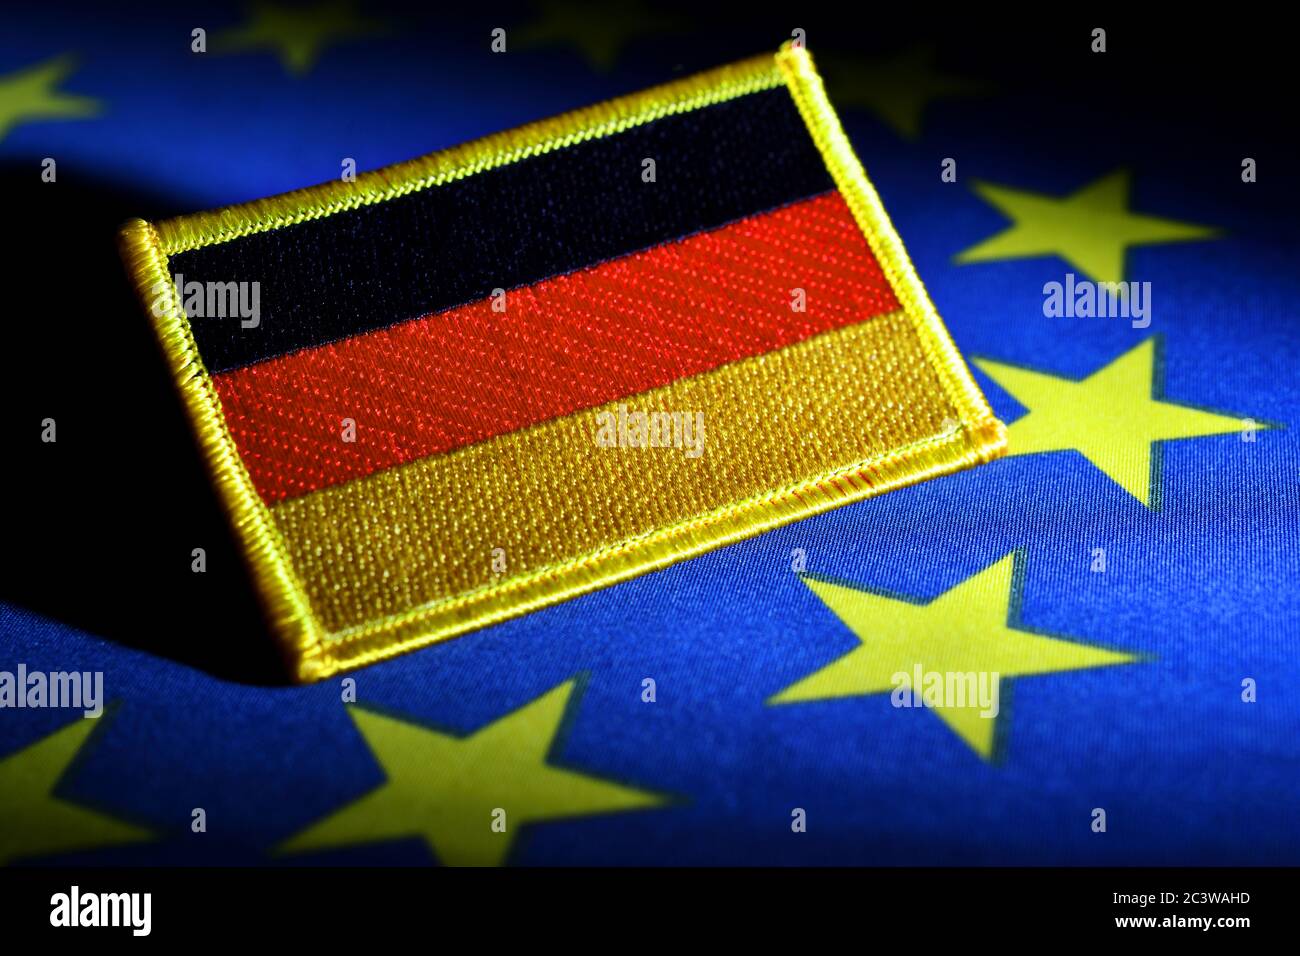 Bandiera tedesca alla bandiera UE Foto icona per la Presidenza tedesca dell’UE, Deutsche Fahne auf EU-Fahne, Symboloto für die deutsche EU-Ratspräsidentschaft Foto Stock